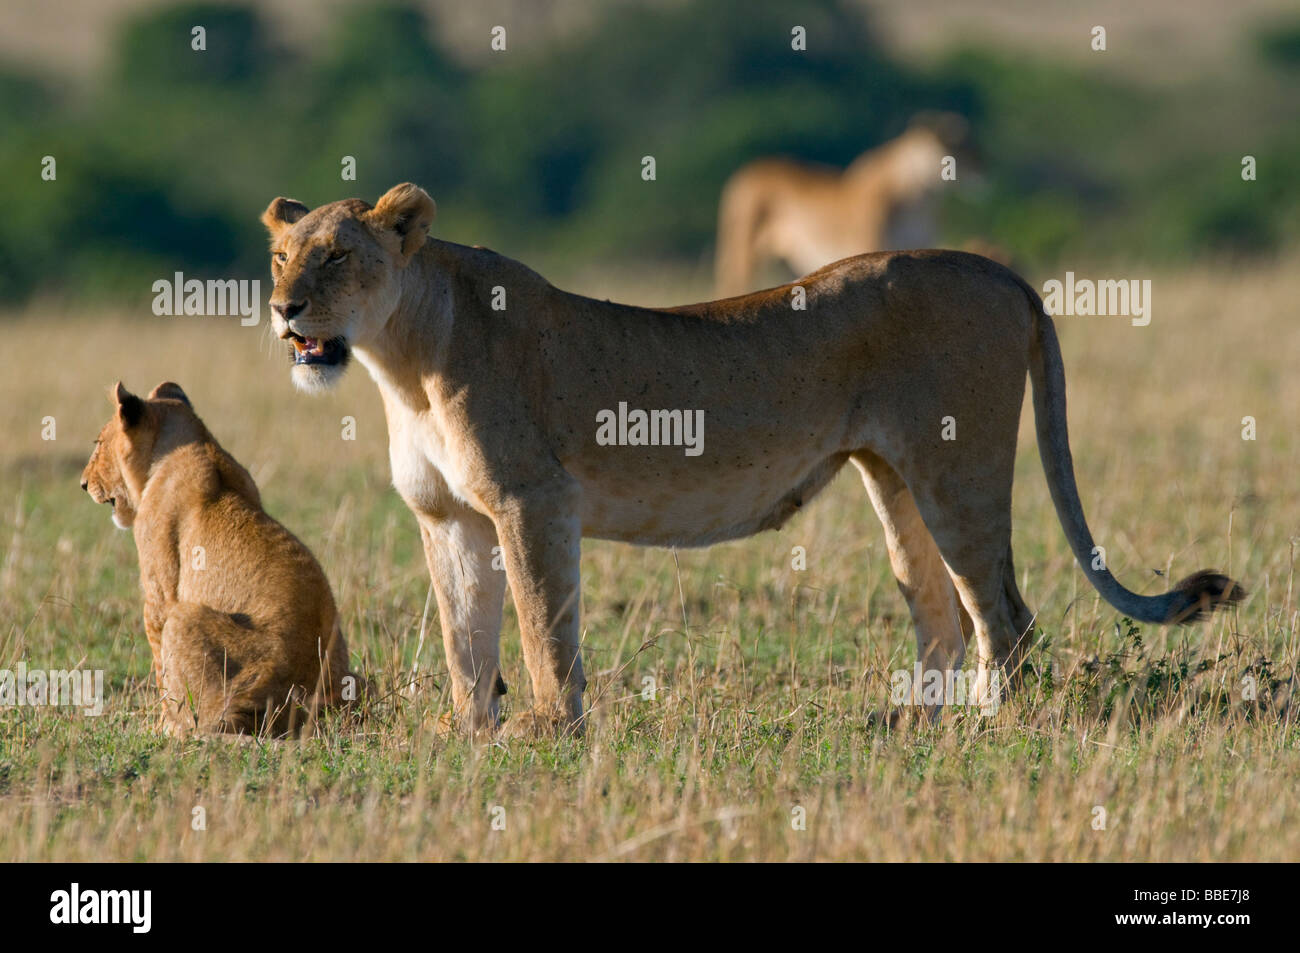 Lion (Panthera leo), lionne avec cub, Masai Mara National Reserve, Kenya, Afrique de l'Est Banque D'Images